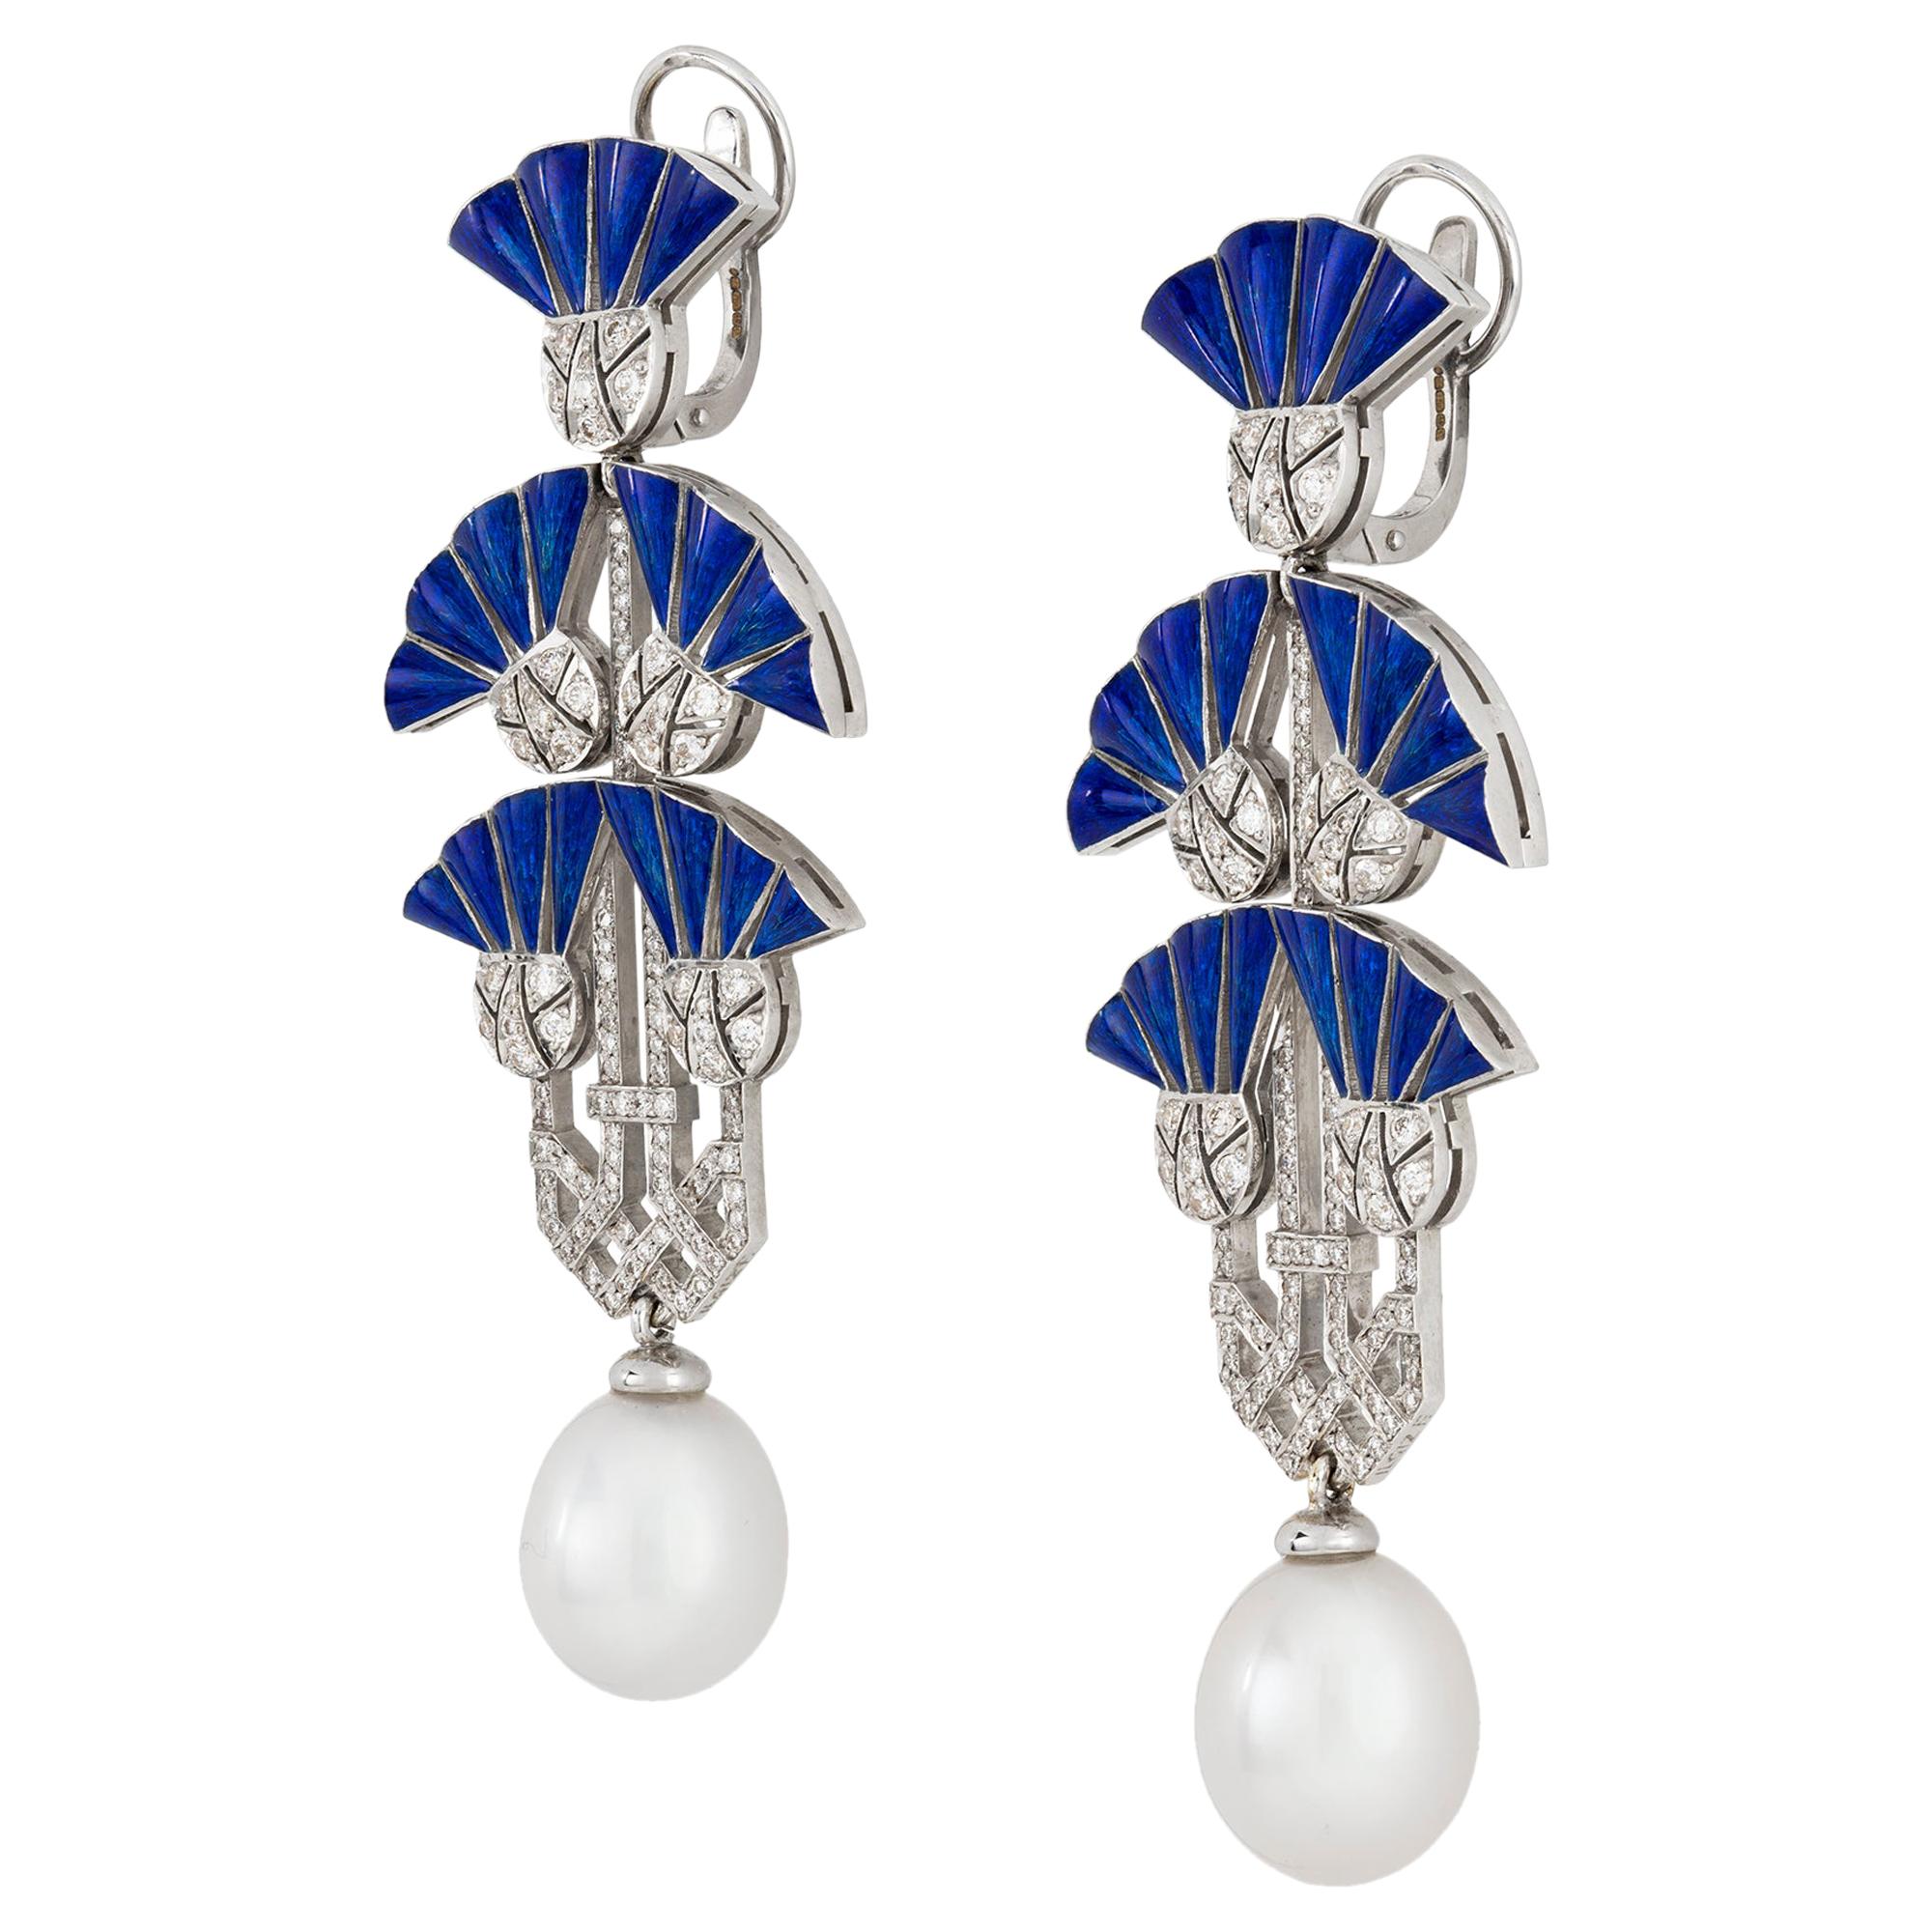 Pair of Lotus Earrings by Ilgiz F